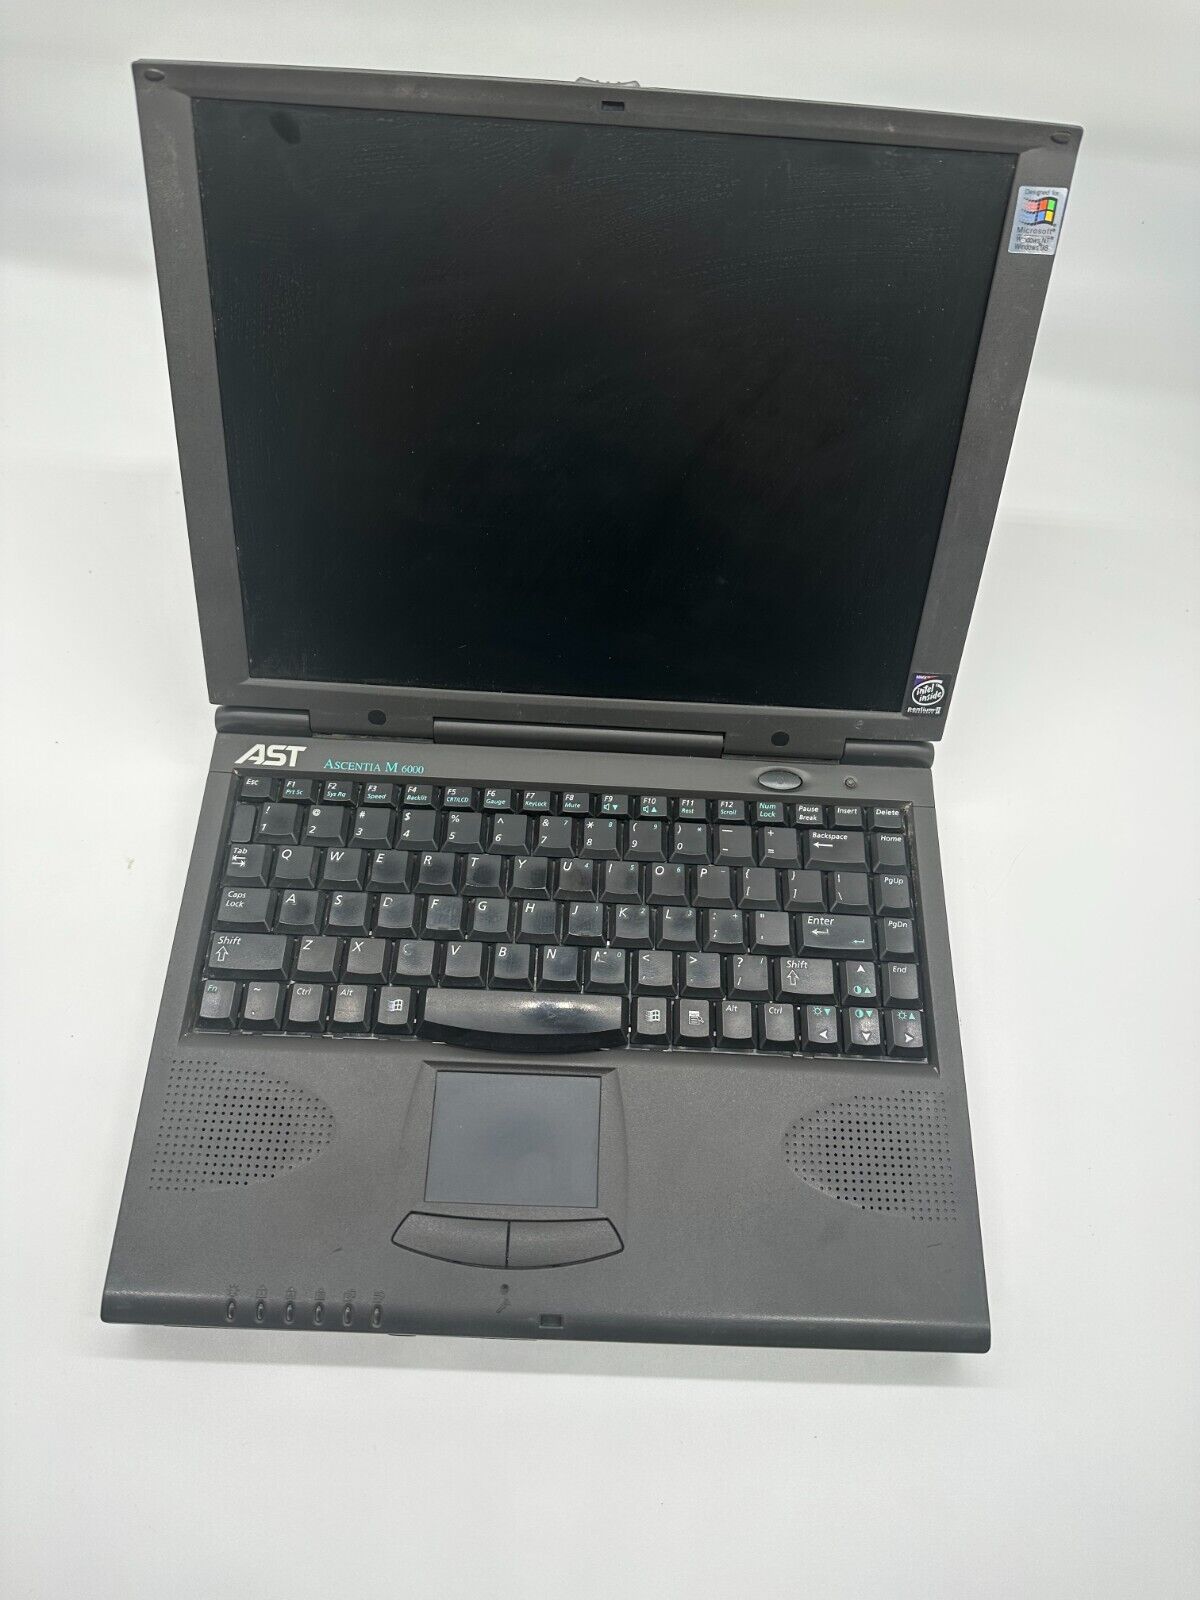 Vintage AST Ascentia M 6000 Series Pentium II Windows 98 Notebook